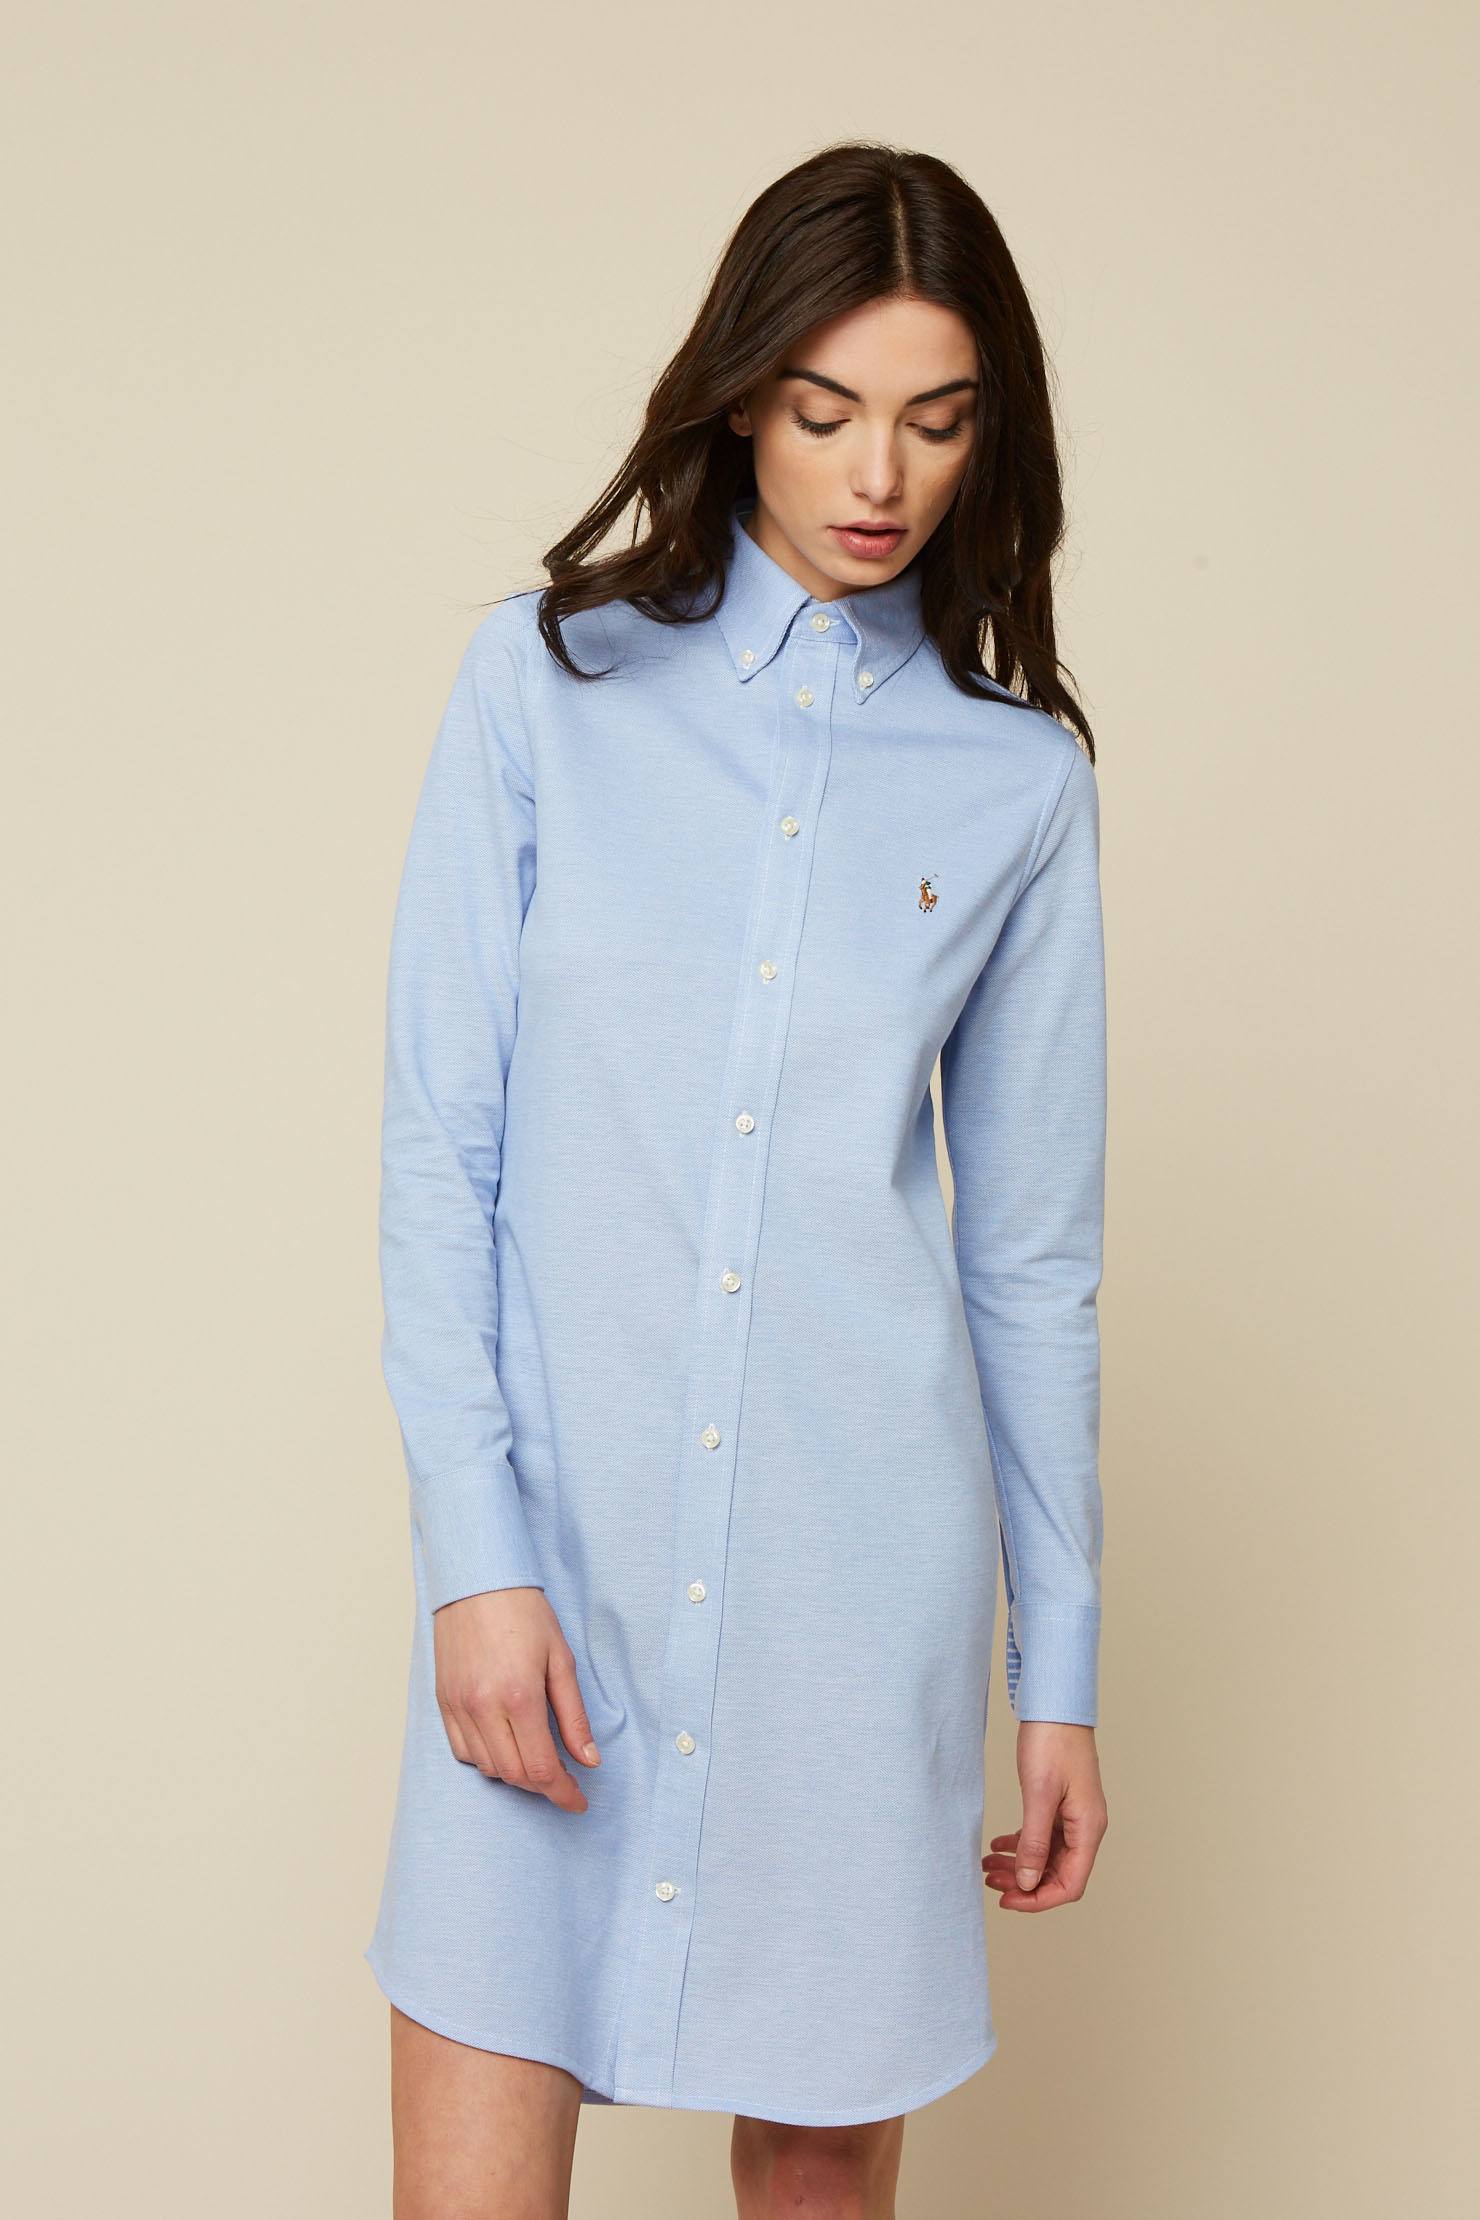 Polo Ralph Lauren Robe polo en coton piqué bleu clair chinébrodé logo marque